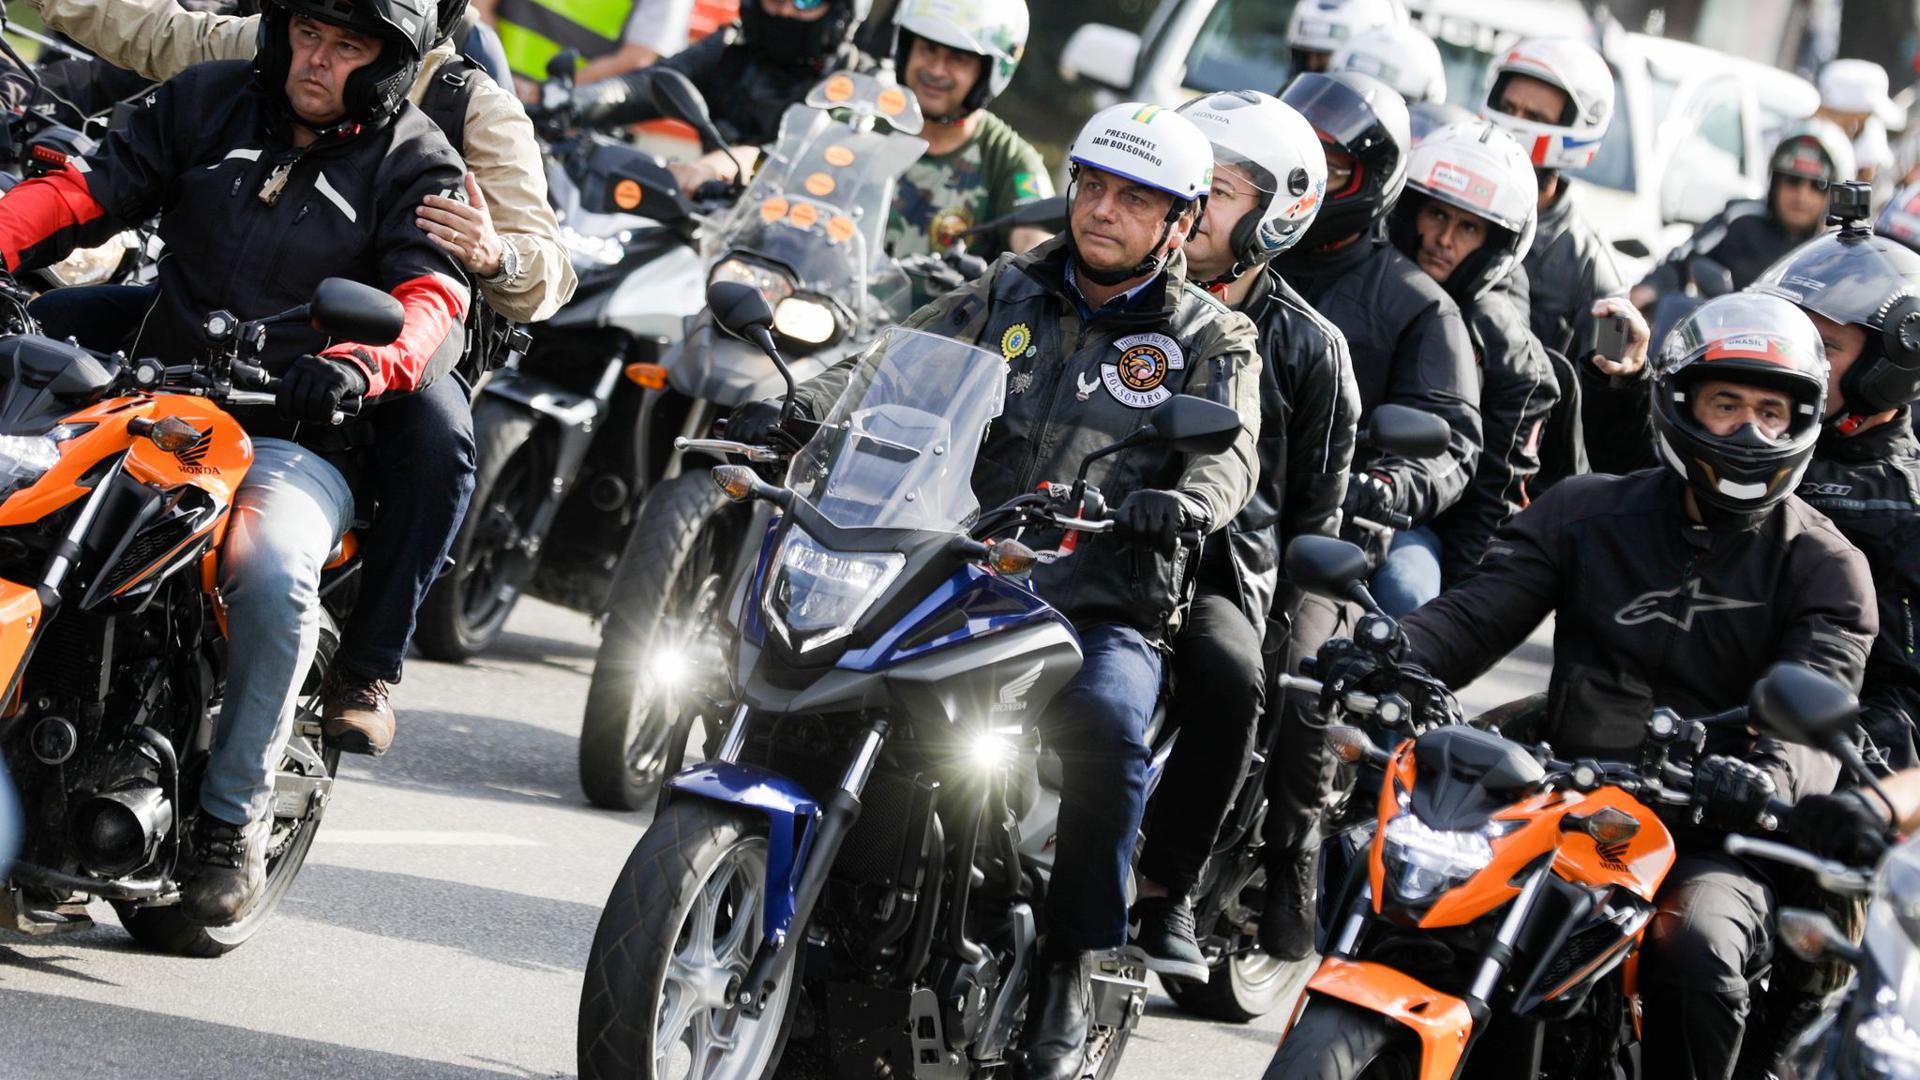 Bolsonaro in der Karawane von Motorradfahrern auf ihrem Weg durch Sao Paulo. Erst vor drei Wochen hatte Bolsonaro ohne Mund-Nasen-Schutz an einer Motorradrundfahrt durch die Millionenmetropole Rio de Janeiro teilgenommen und eine Rede vor seinen Anhängern gehalten.